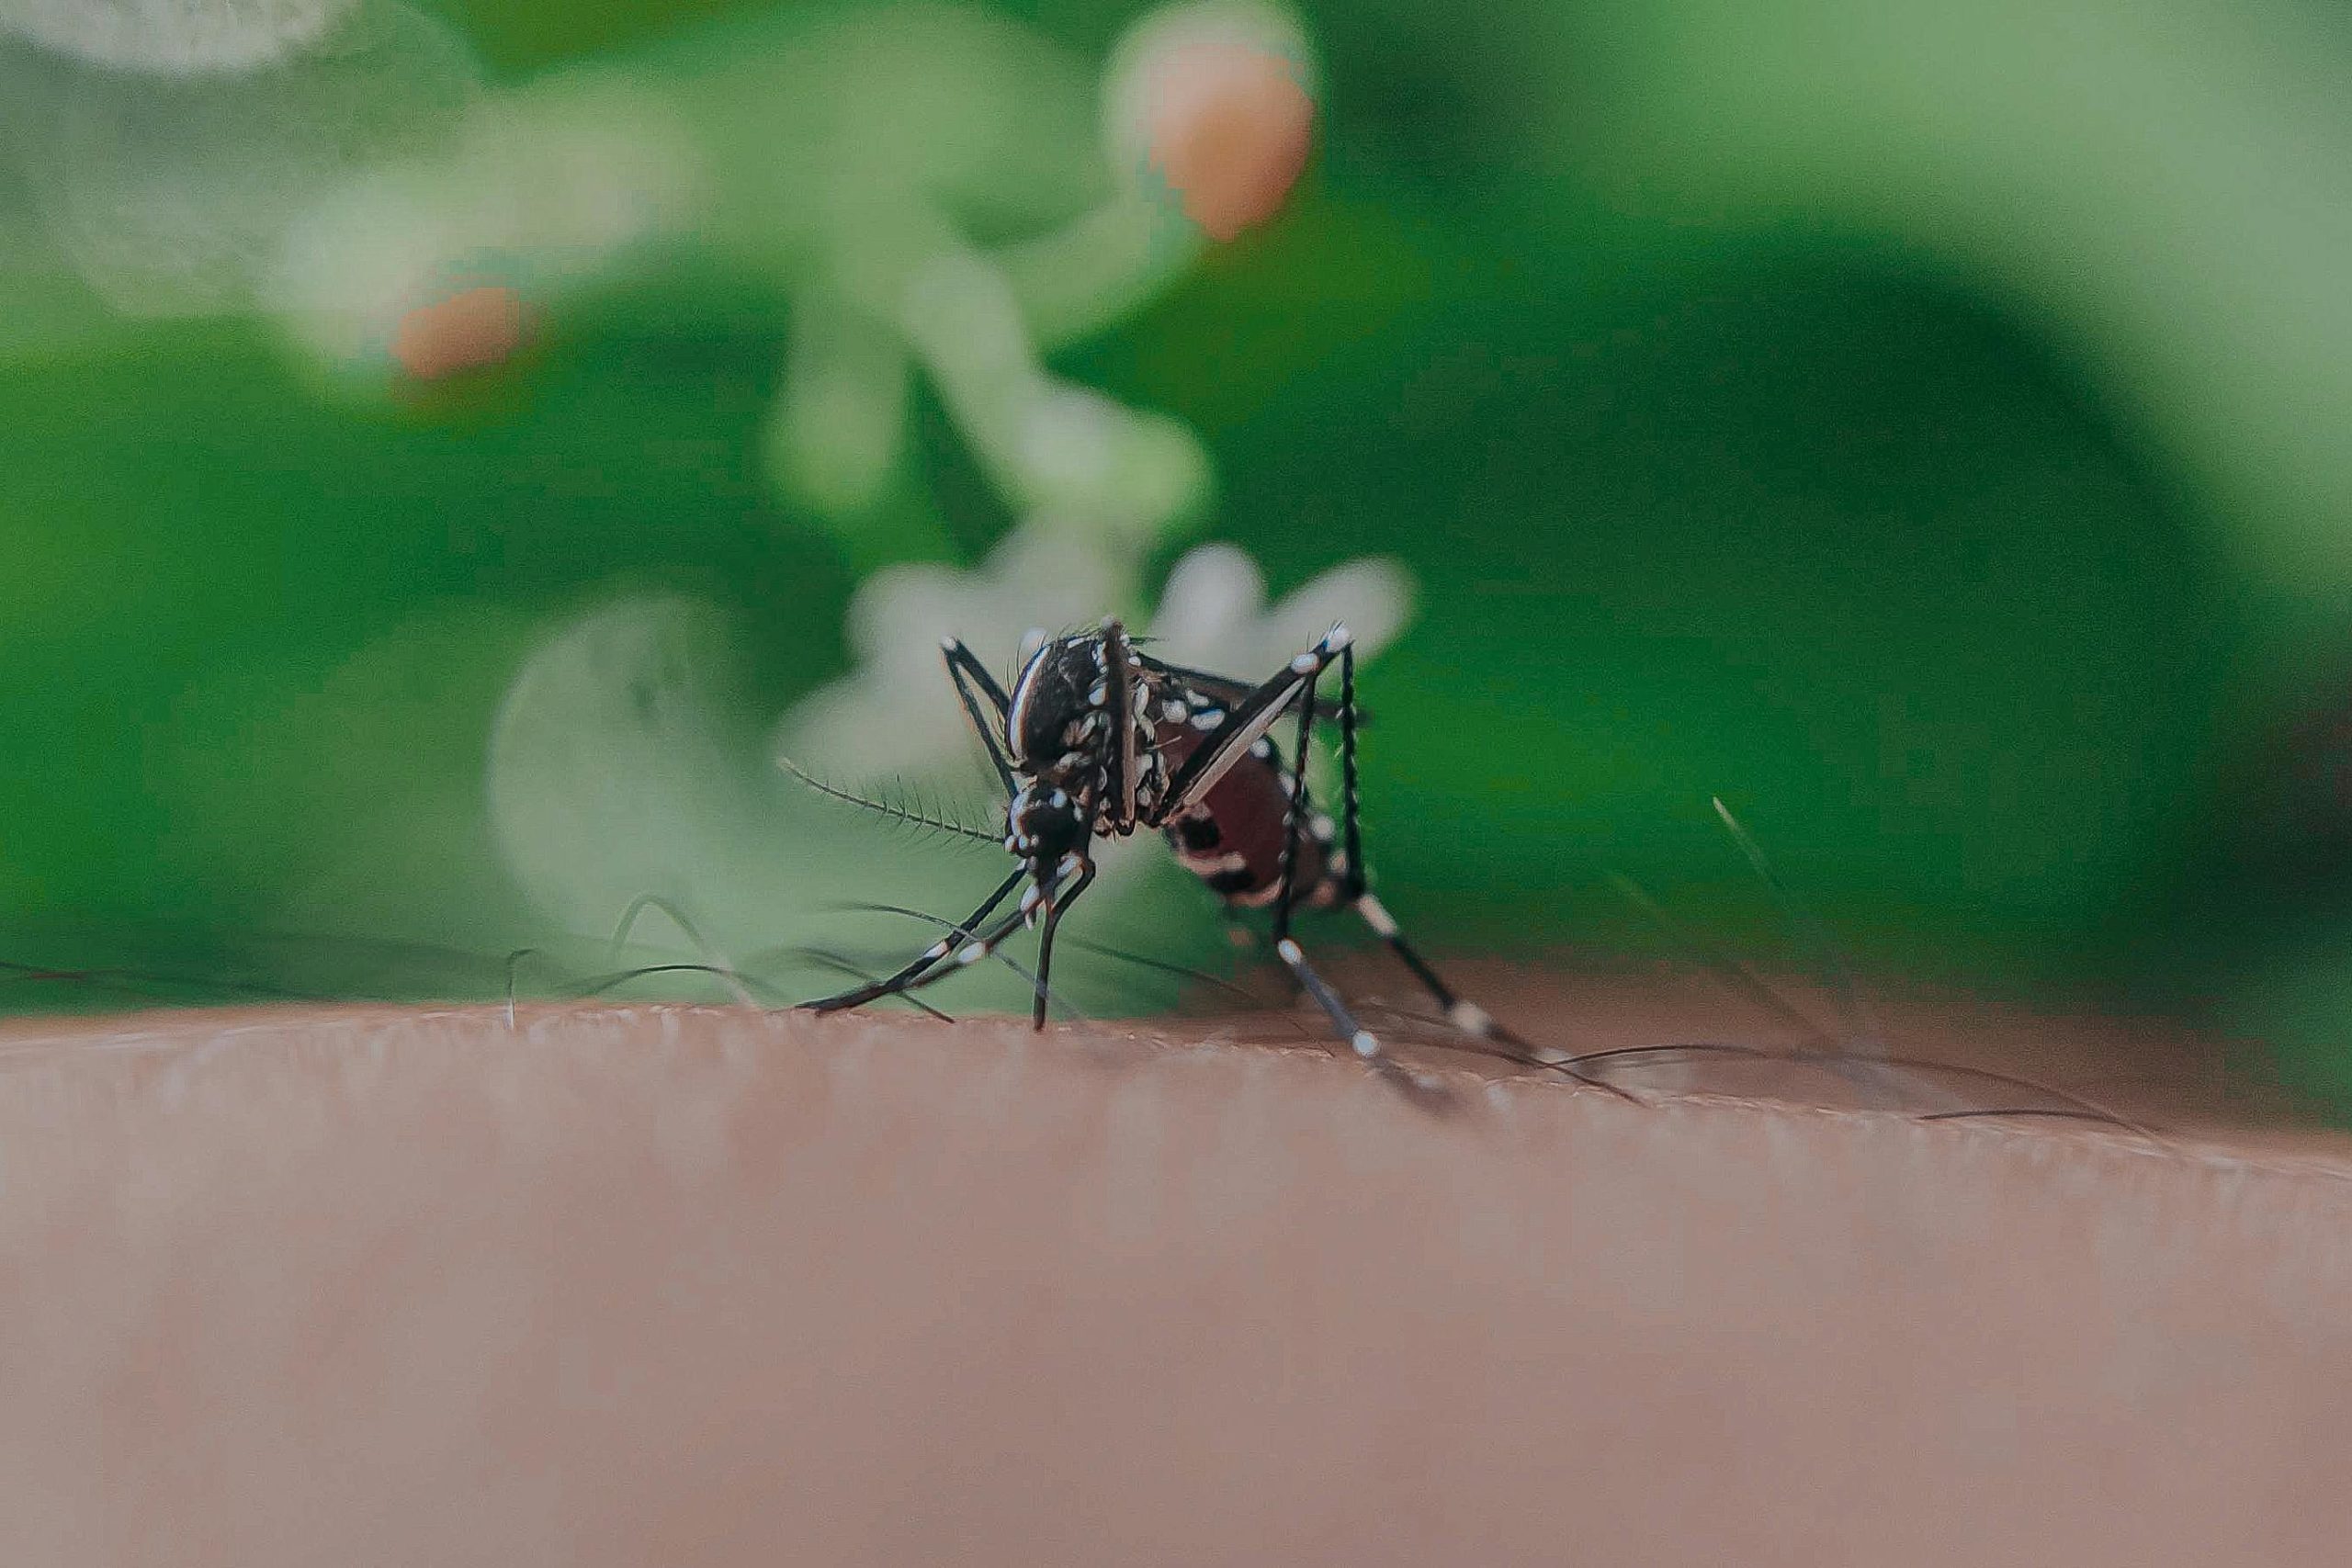 Mosquito del Dengue en Chile: Especialista explica por qué el mosquito transmisor no podría reproducirse en nuestro país